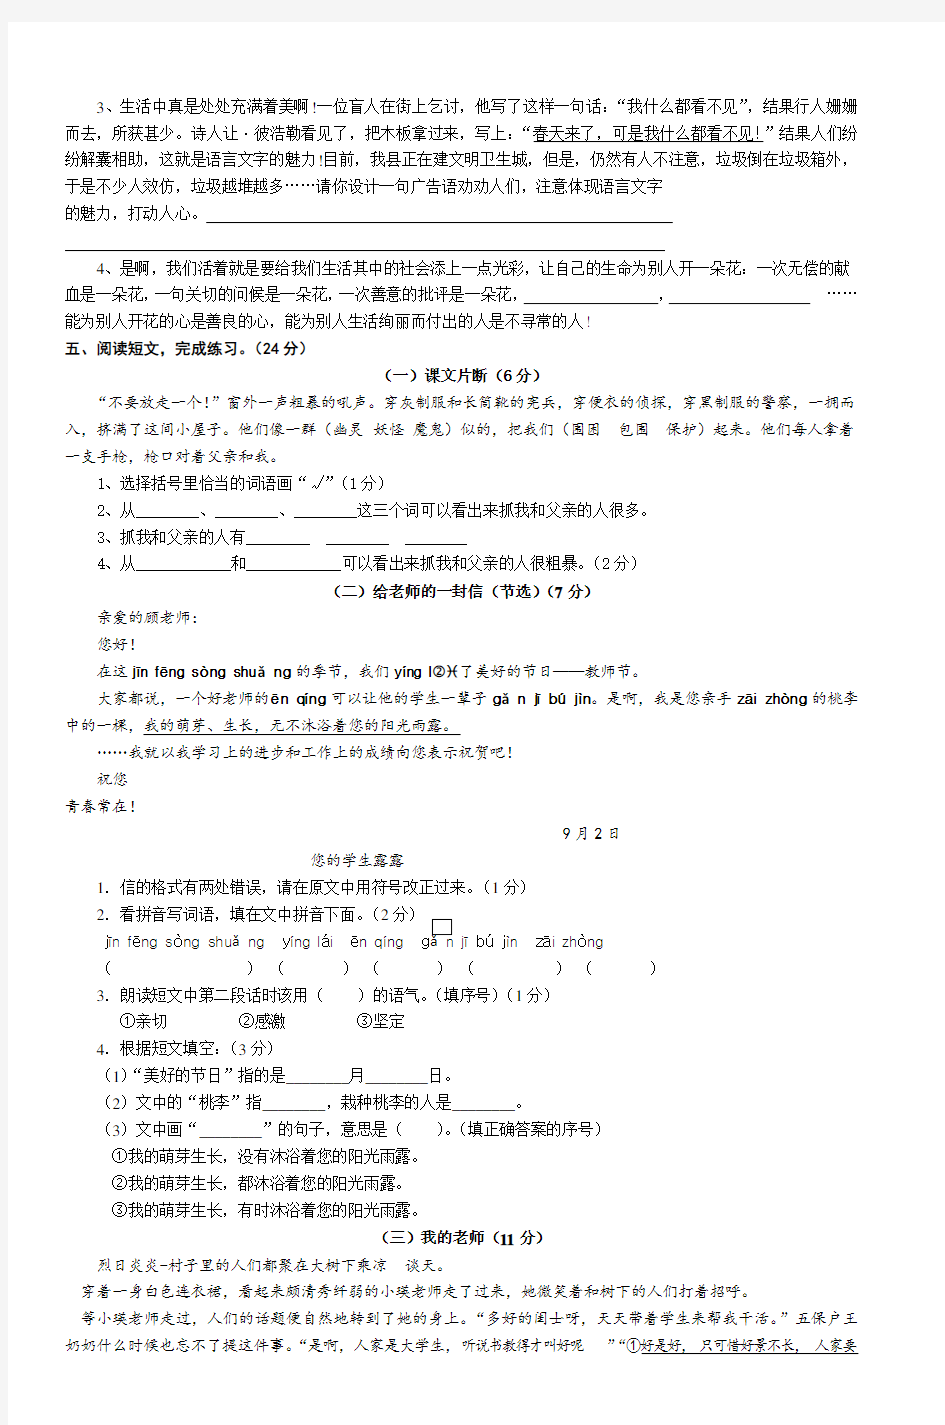 小学语文毕业考试模拟试题(4)_2